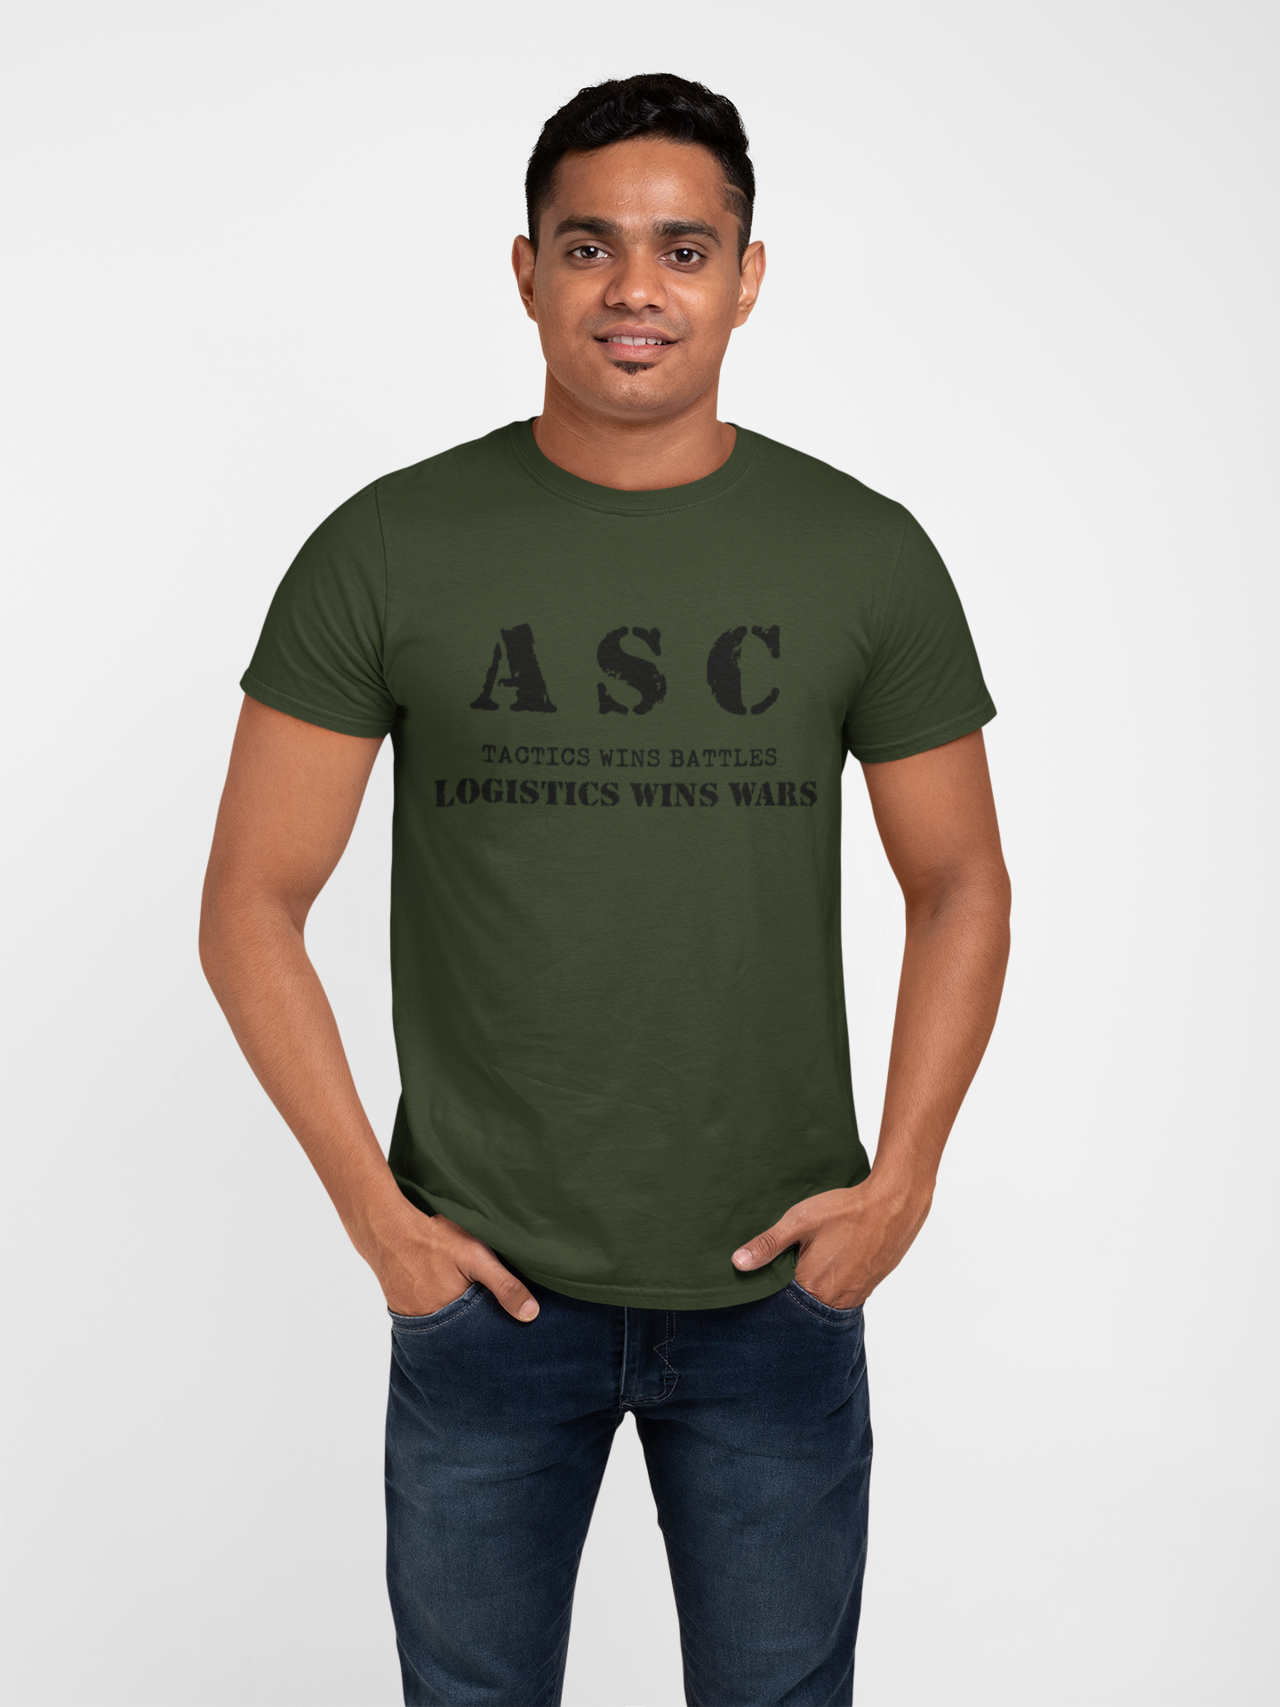 ASC T-shirt - ASC, Tactics Wins Battles, Logistics Wins Wars (Men)